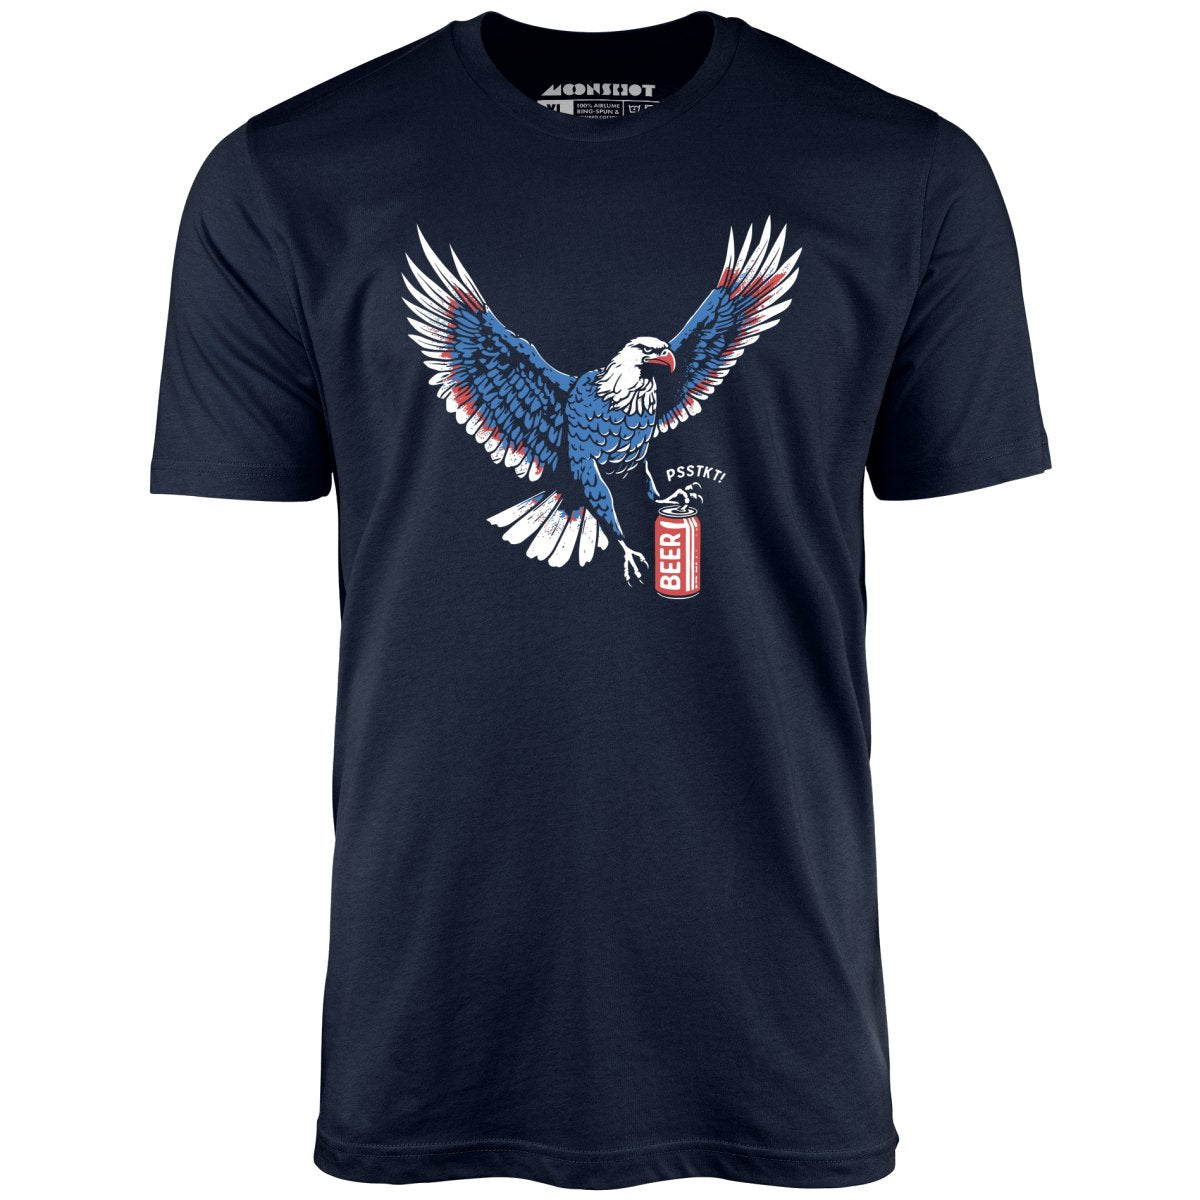 Psstkt Eagle - Unisex T-Shirt